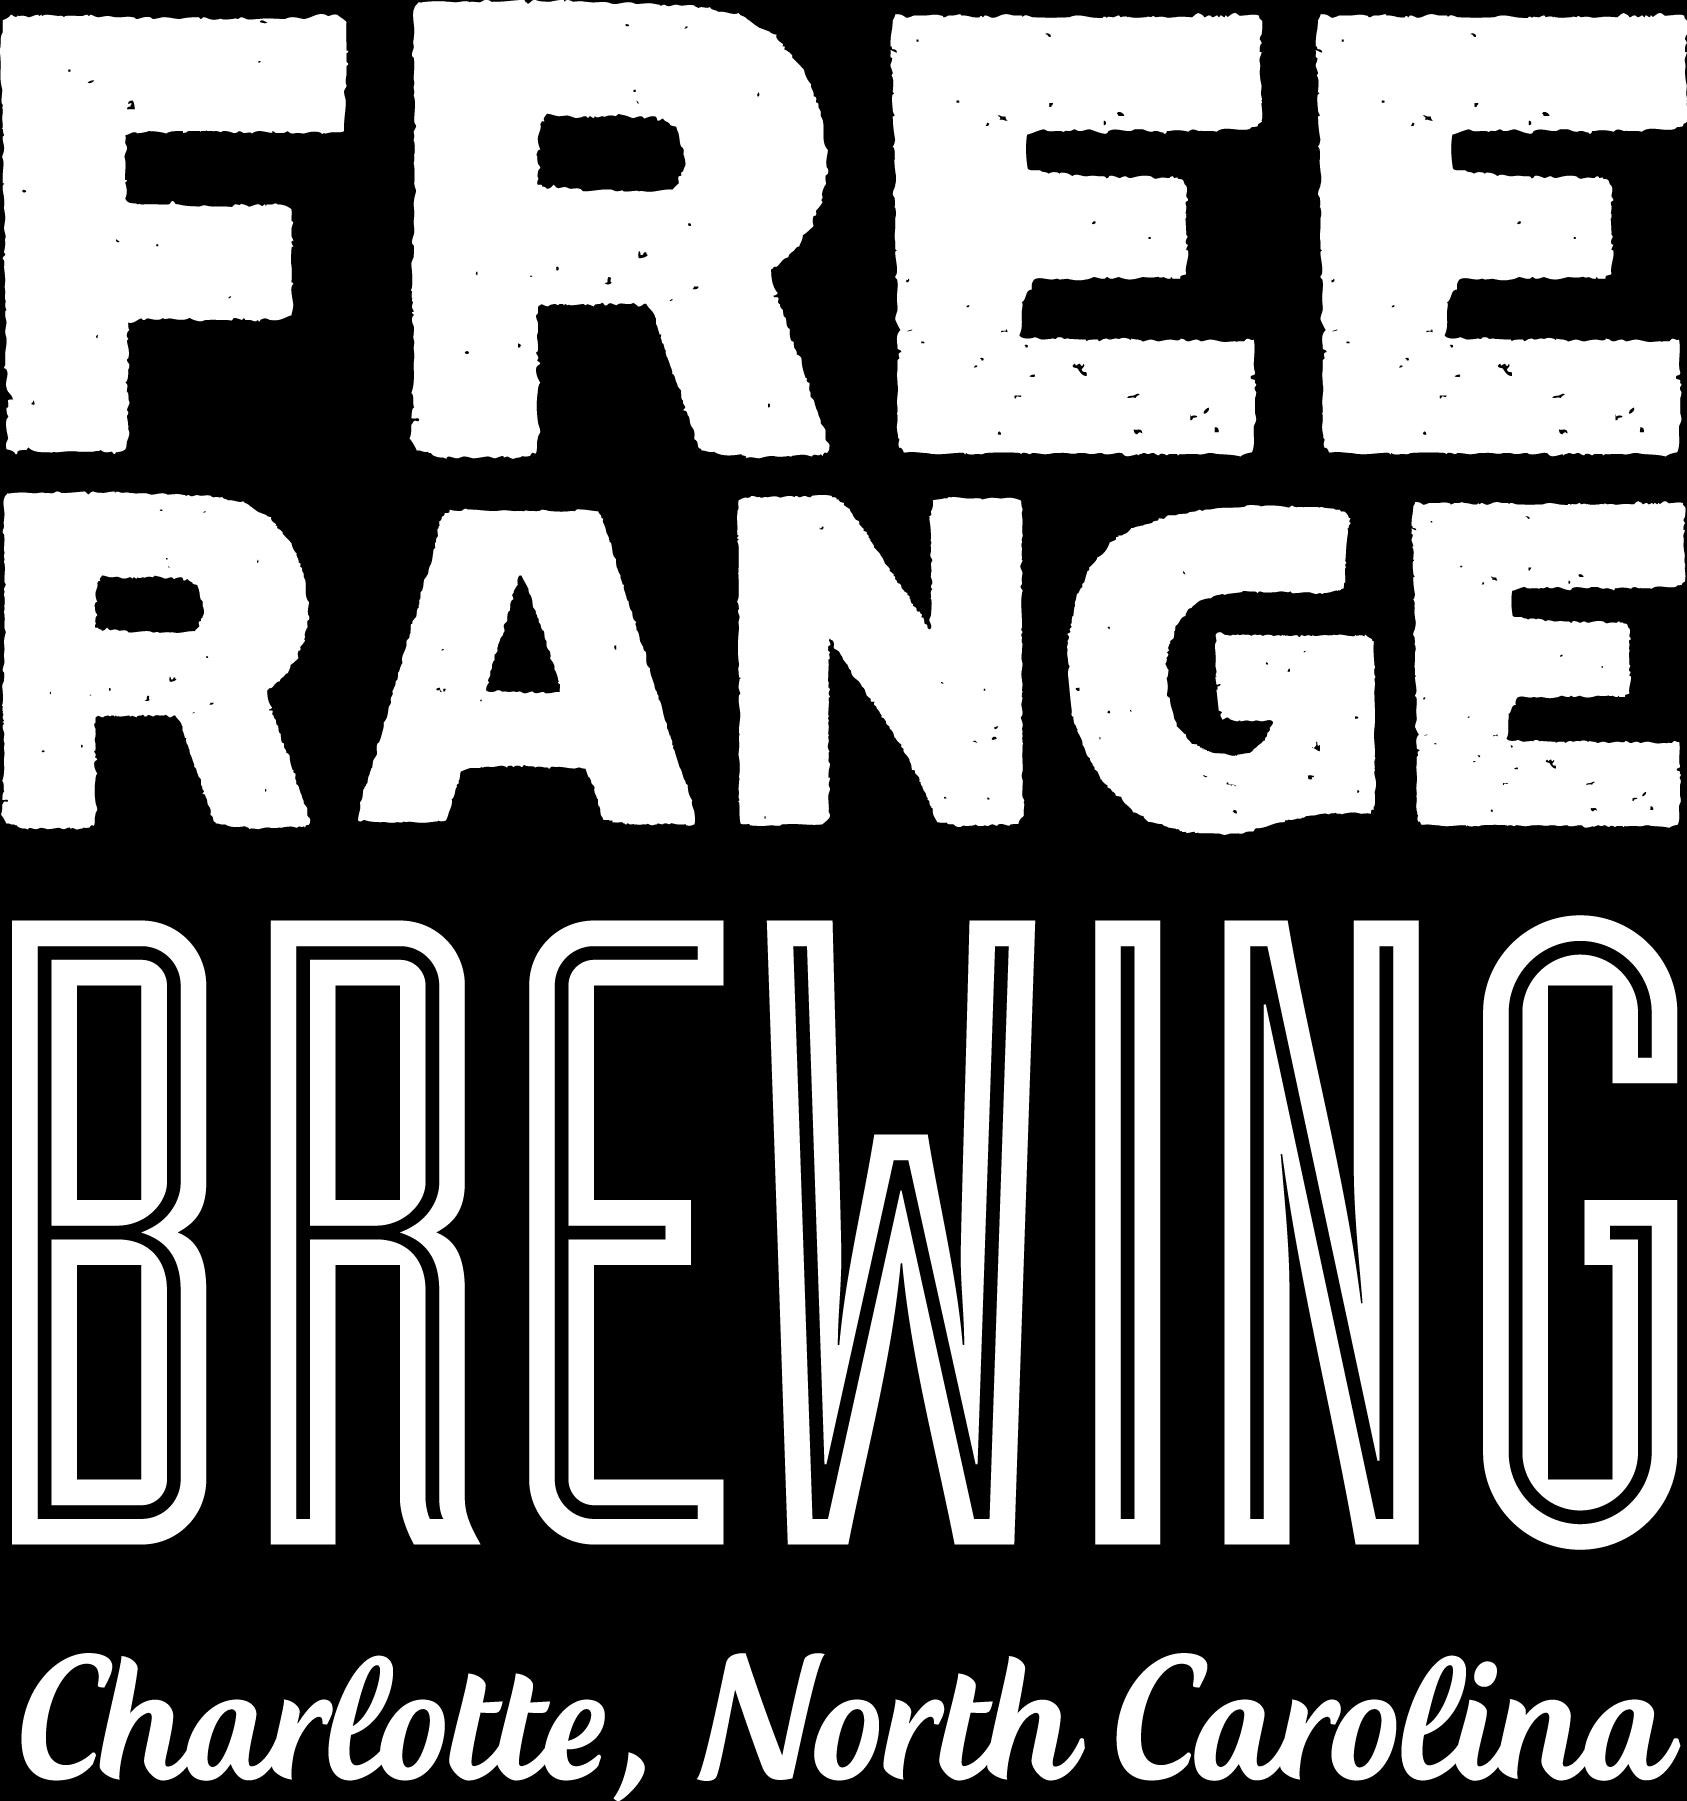 Free Range Brewing